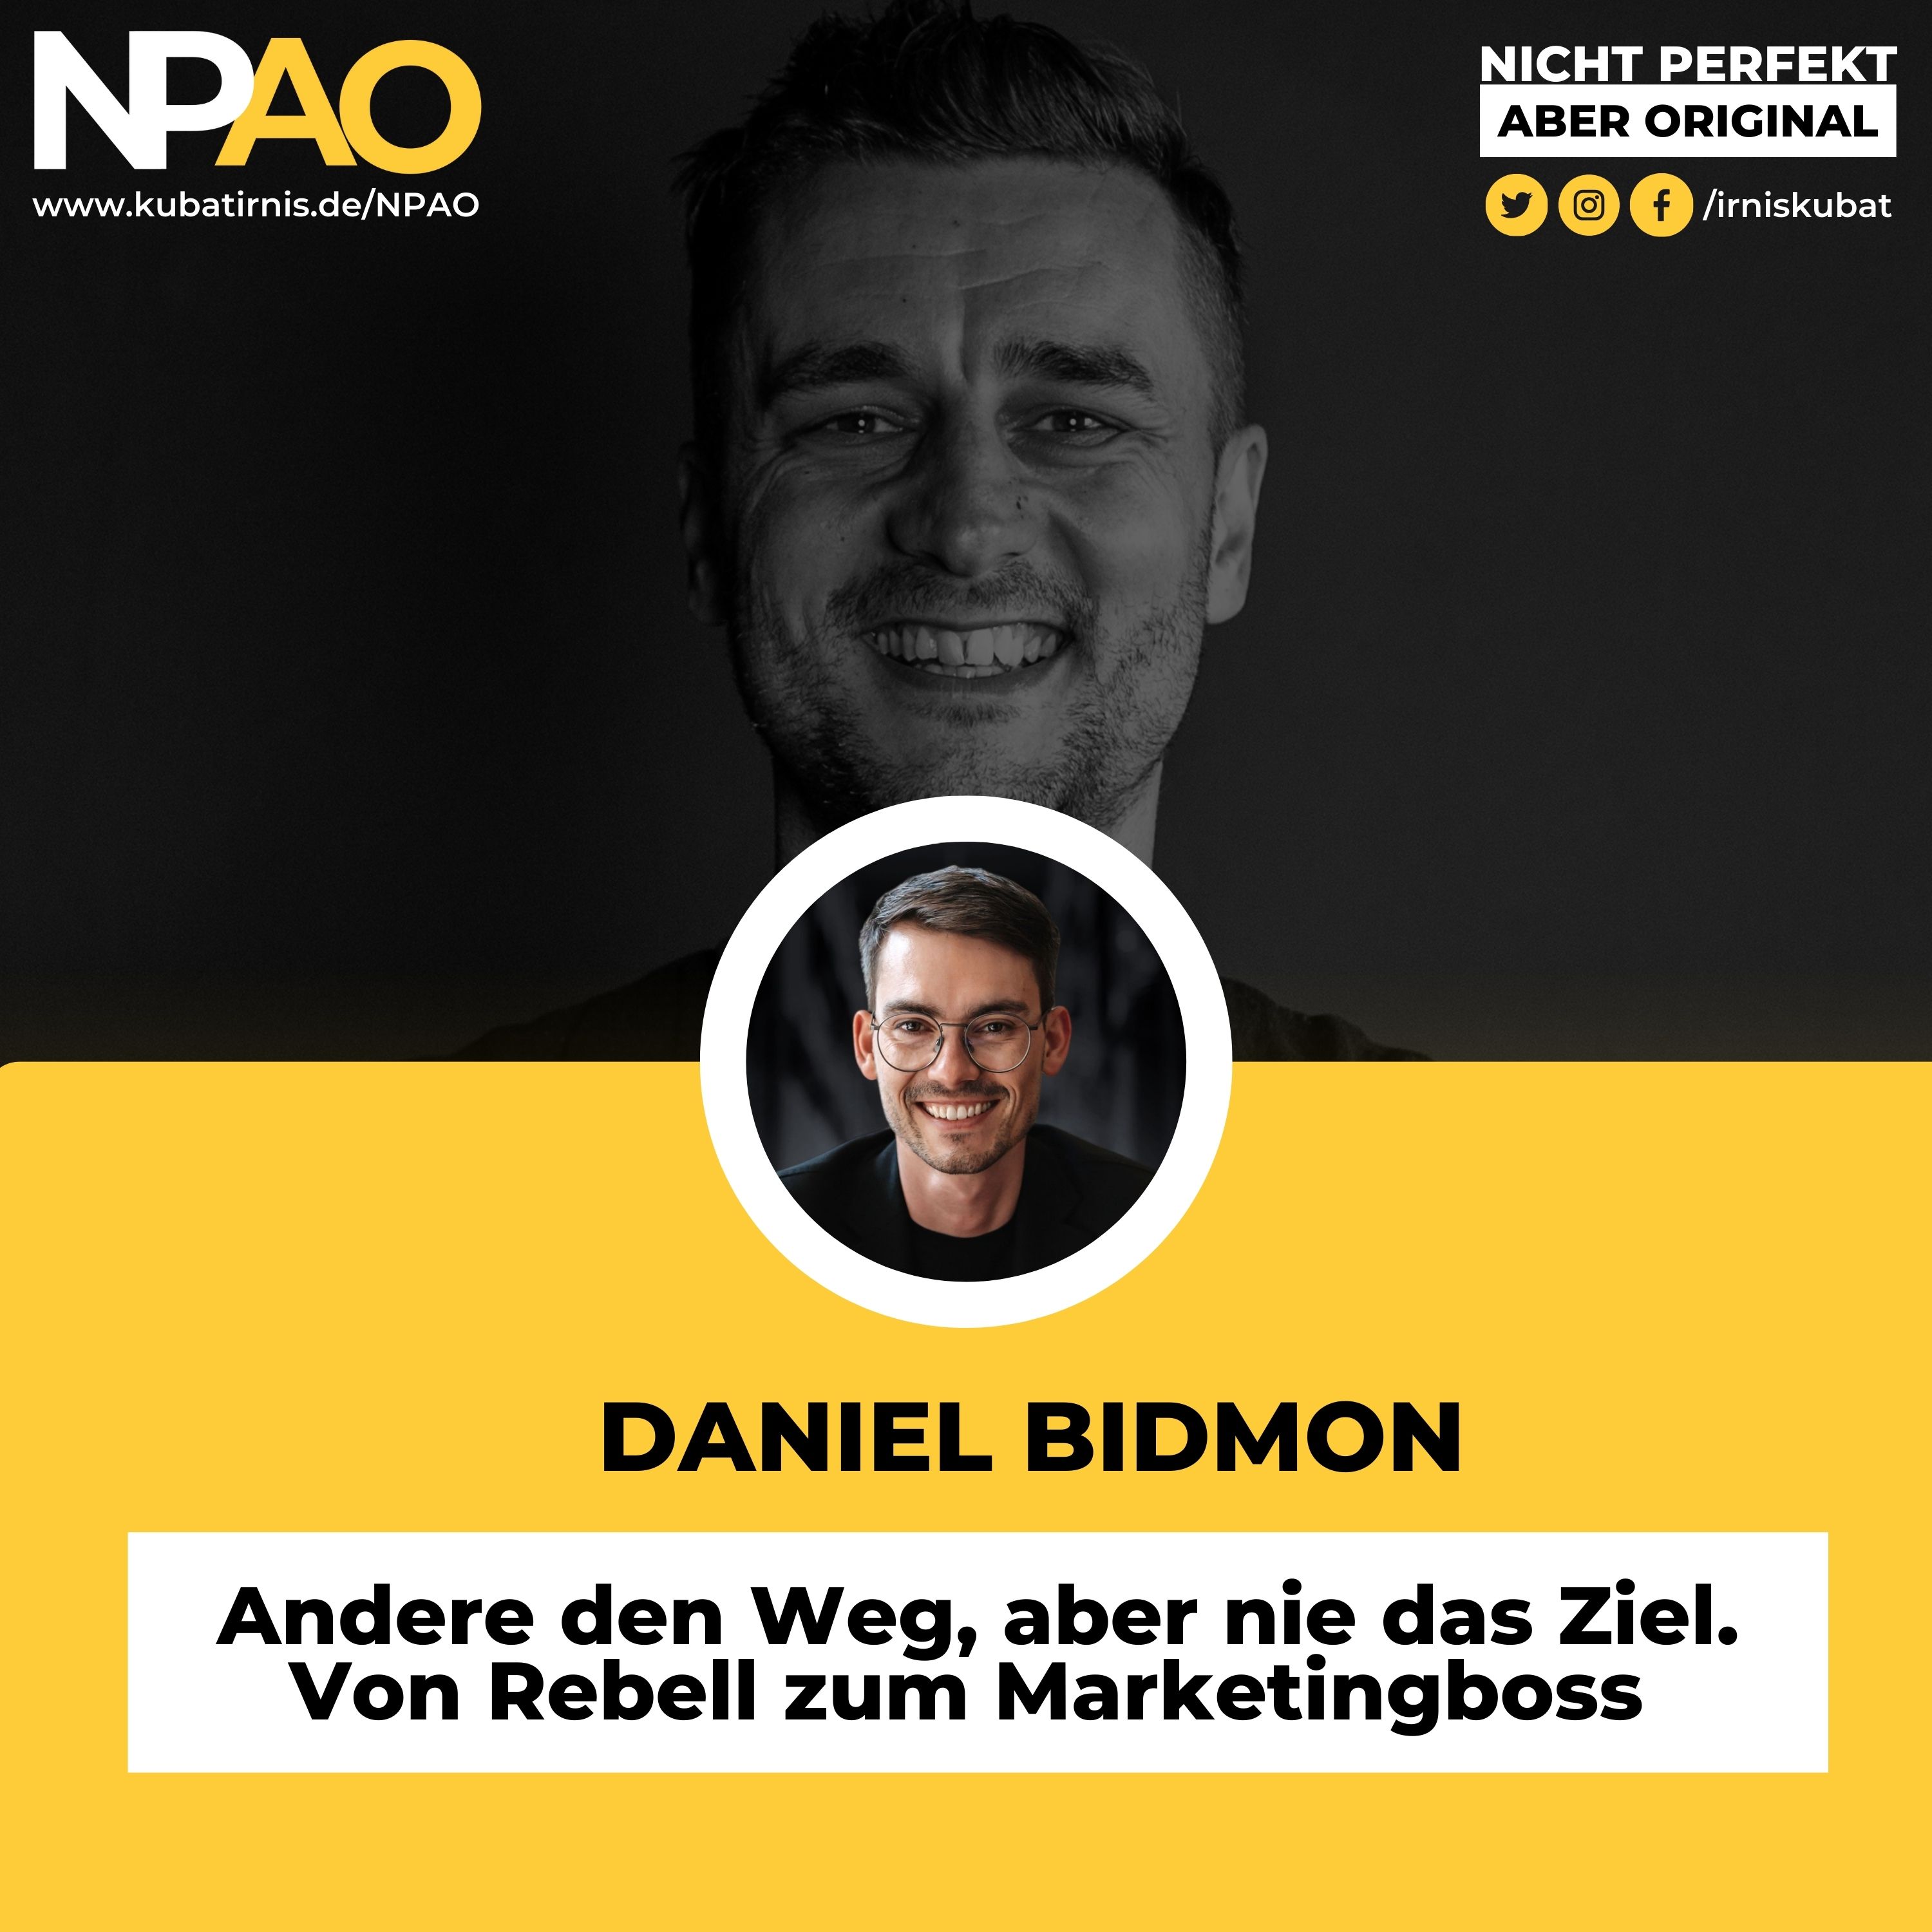 #42 “Punkrock & Marketing: Andere den Weg, aber nie das Ziel. Von Rebell zum Marketingboss” – Daniel Bidmon